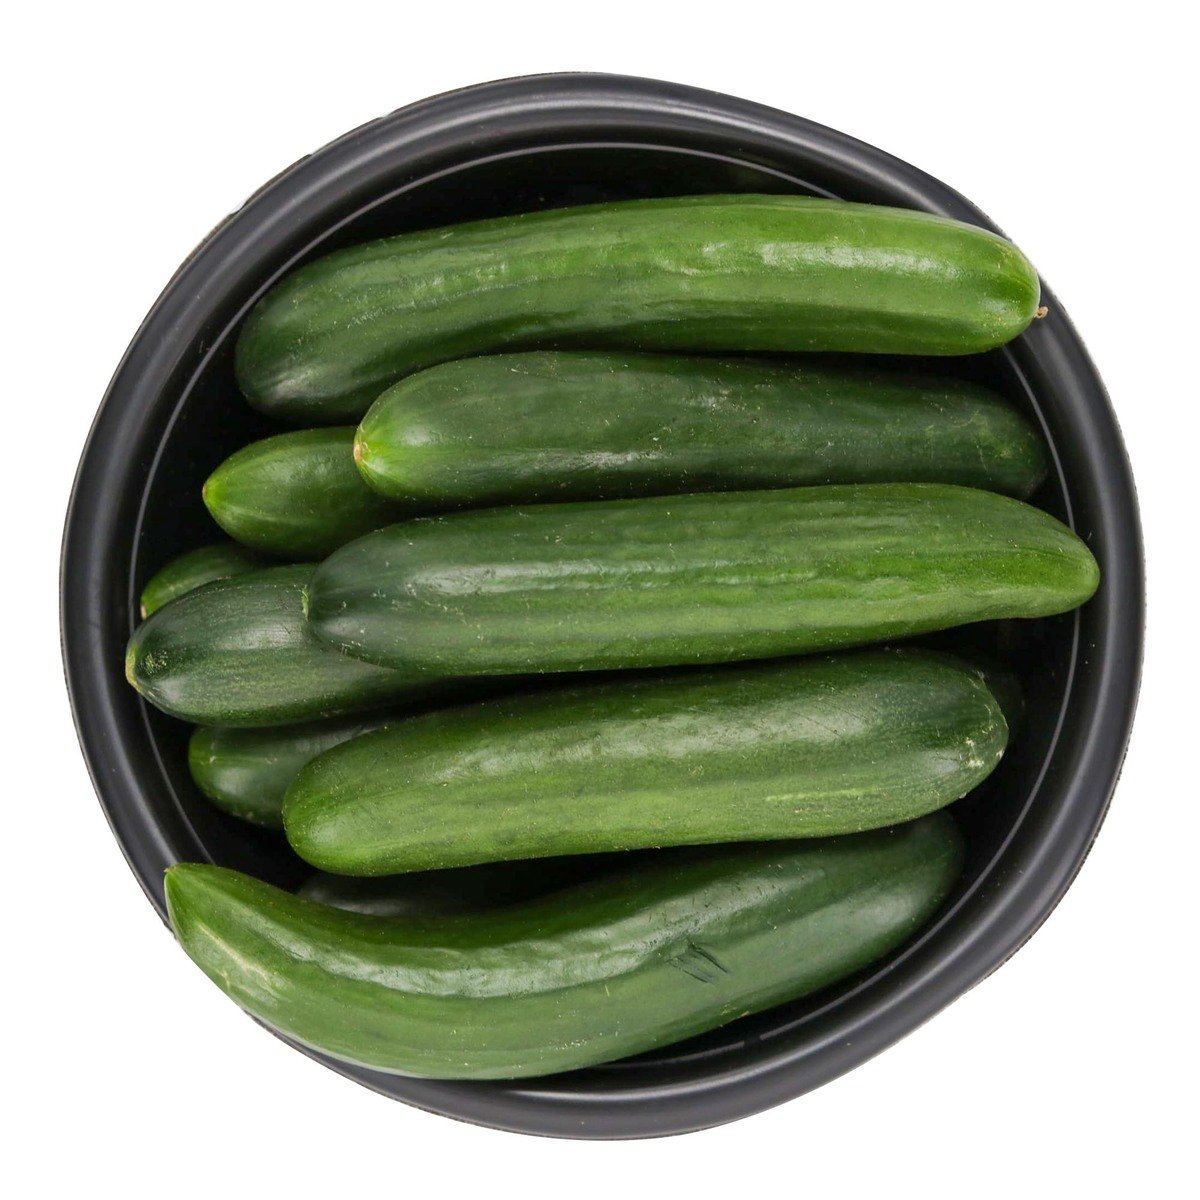 اشتري قم بشراء خيار في علبة العبوة Online at Best Price من الموقع - من لولو هايبر ماركت Pre Packed Vegetable في السعودية